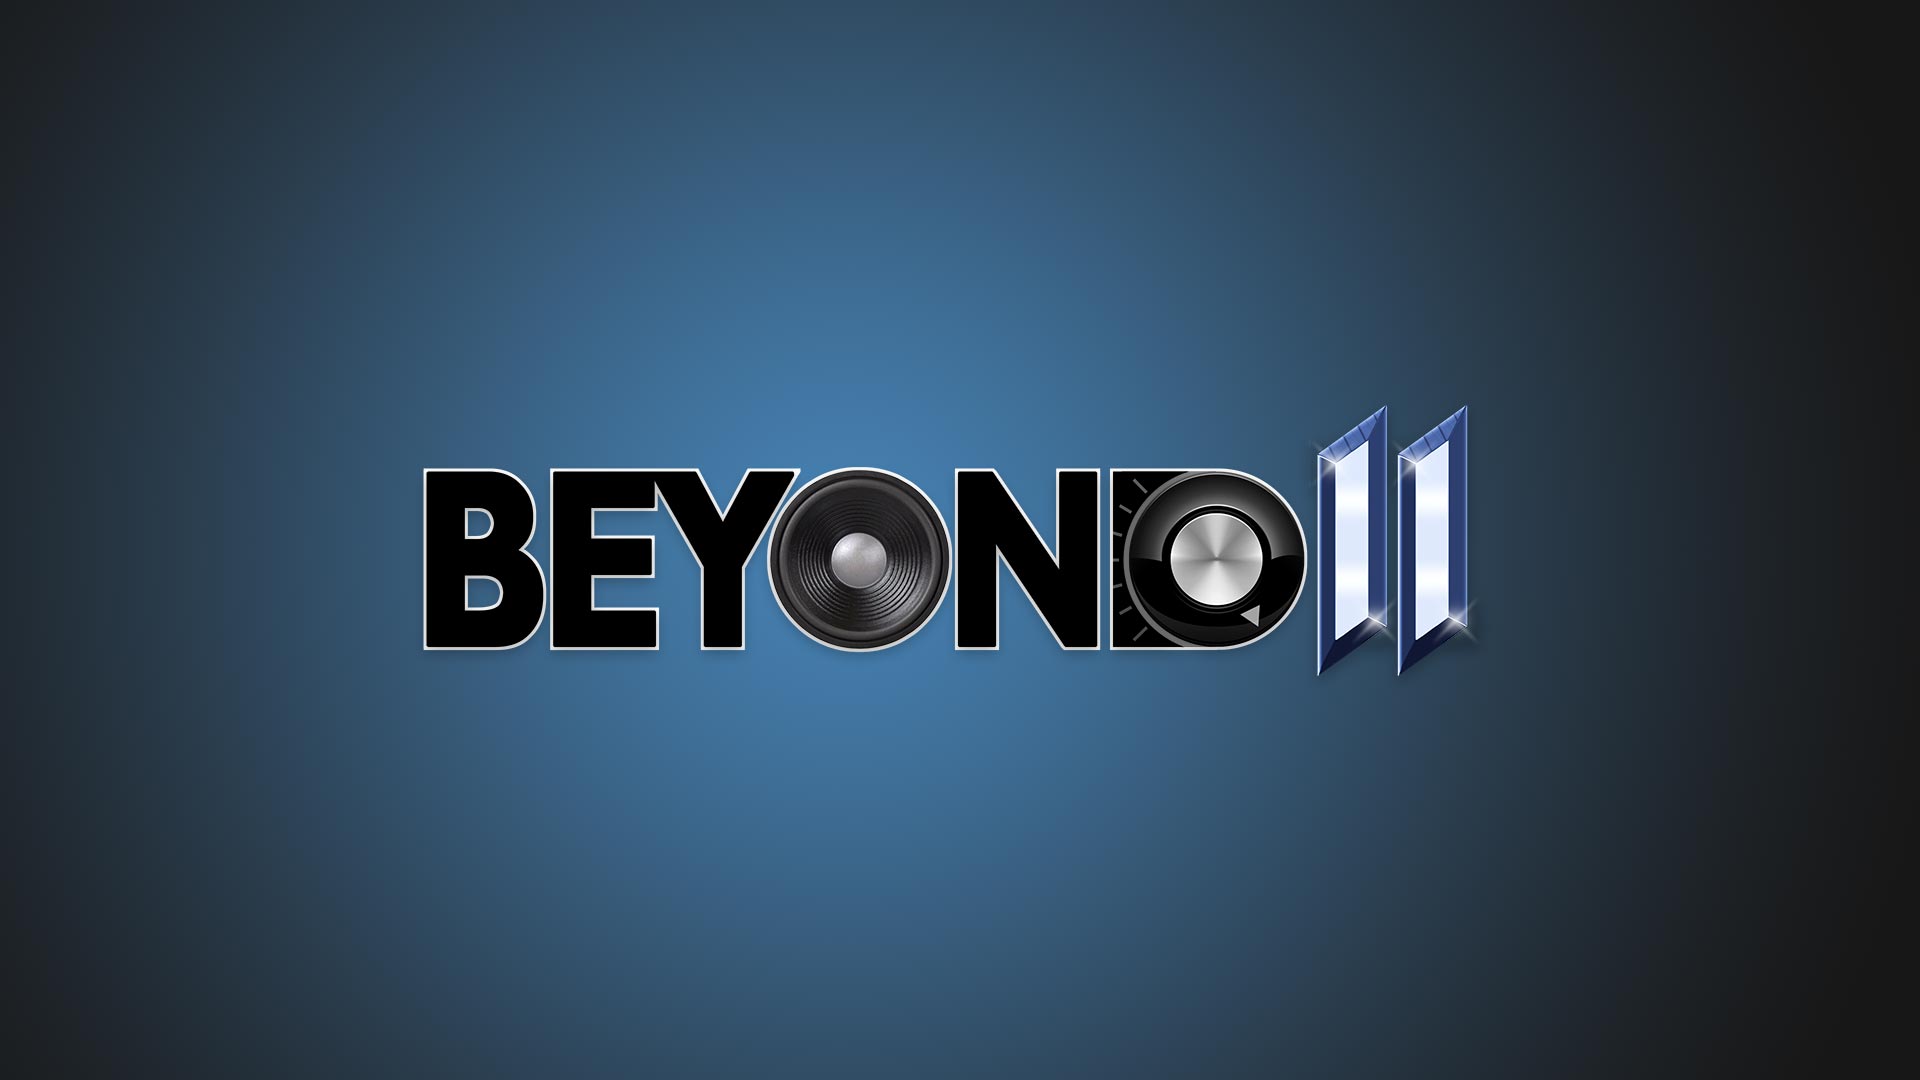 Beyond 11